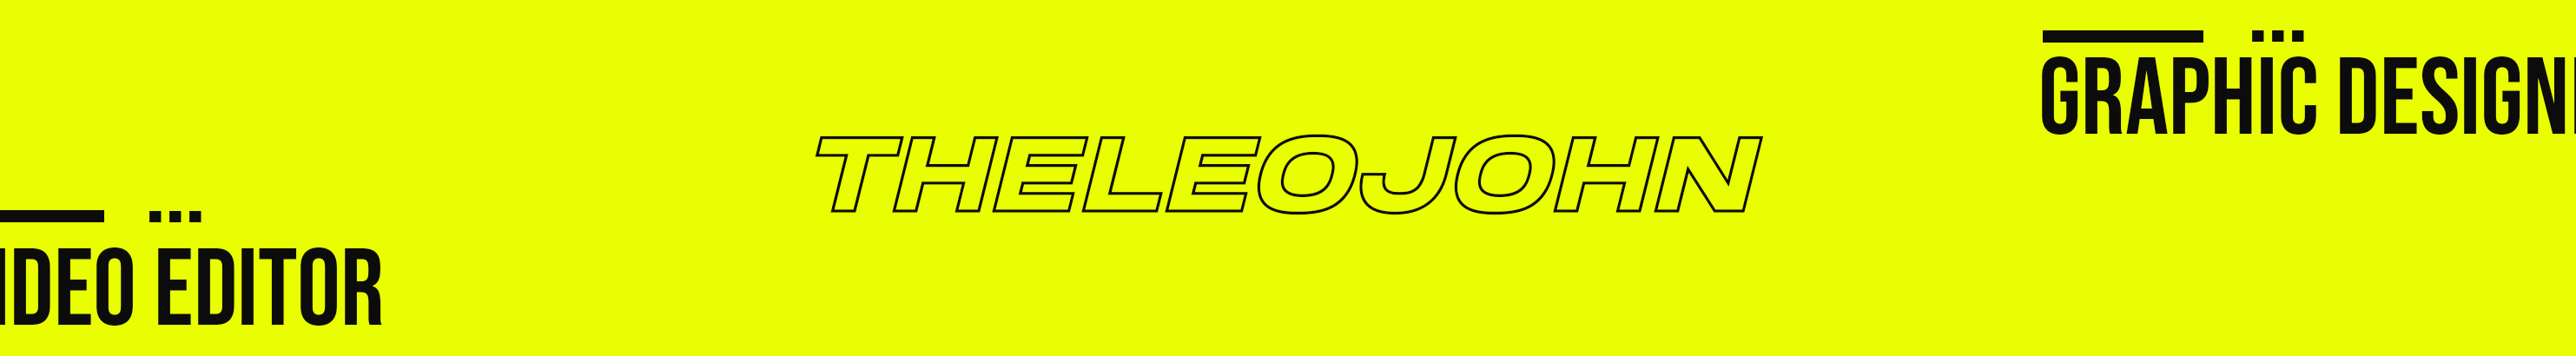 Leo John's profile banner